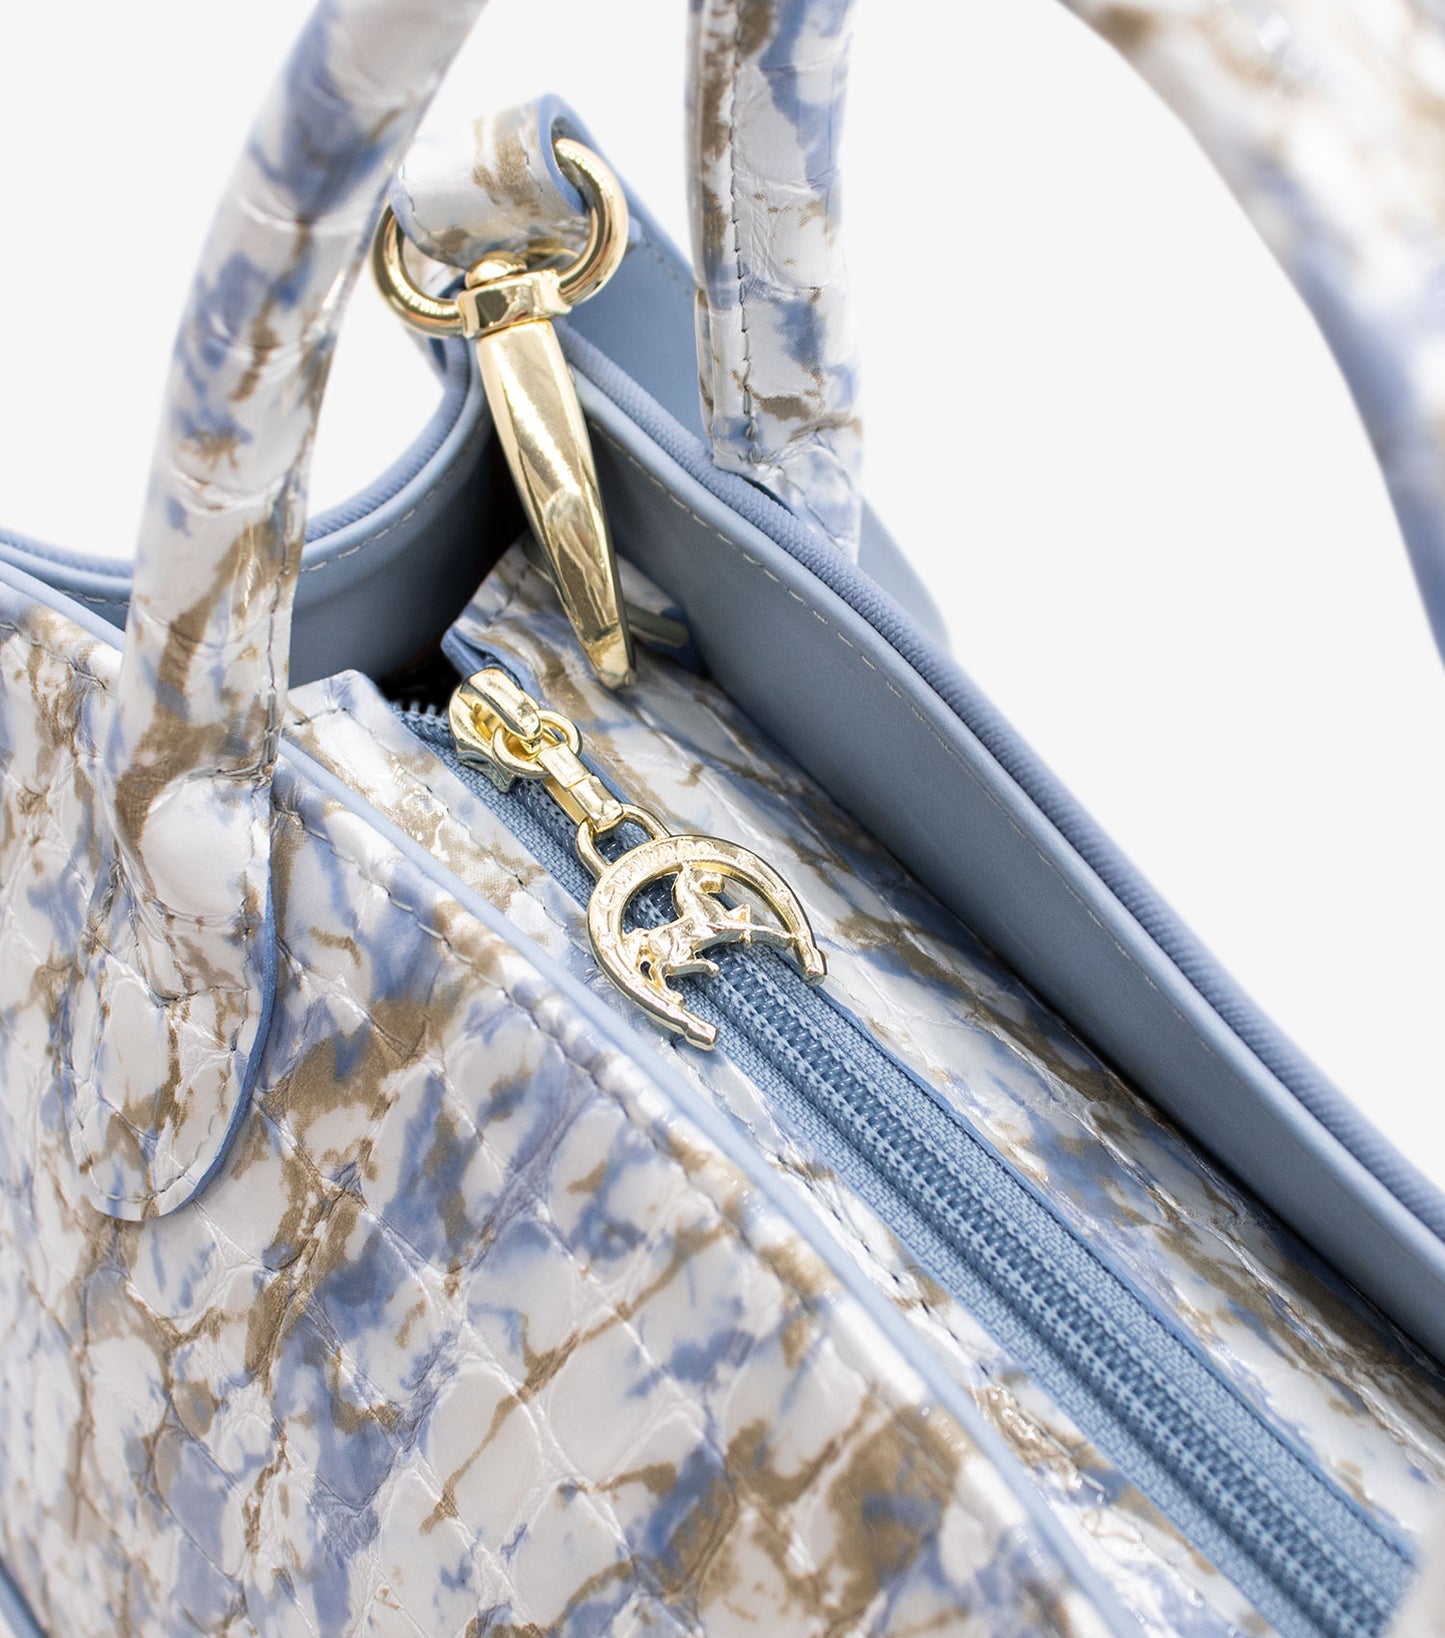 #color_ Blue White | Cavalinho Acqua Bella Handbag - Blue White - 18600480.10_P05